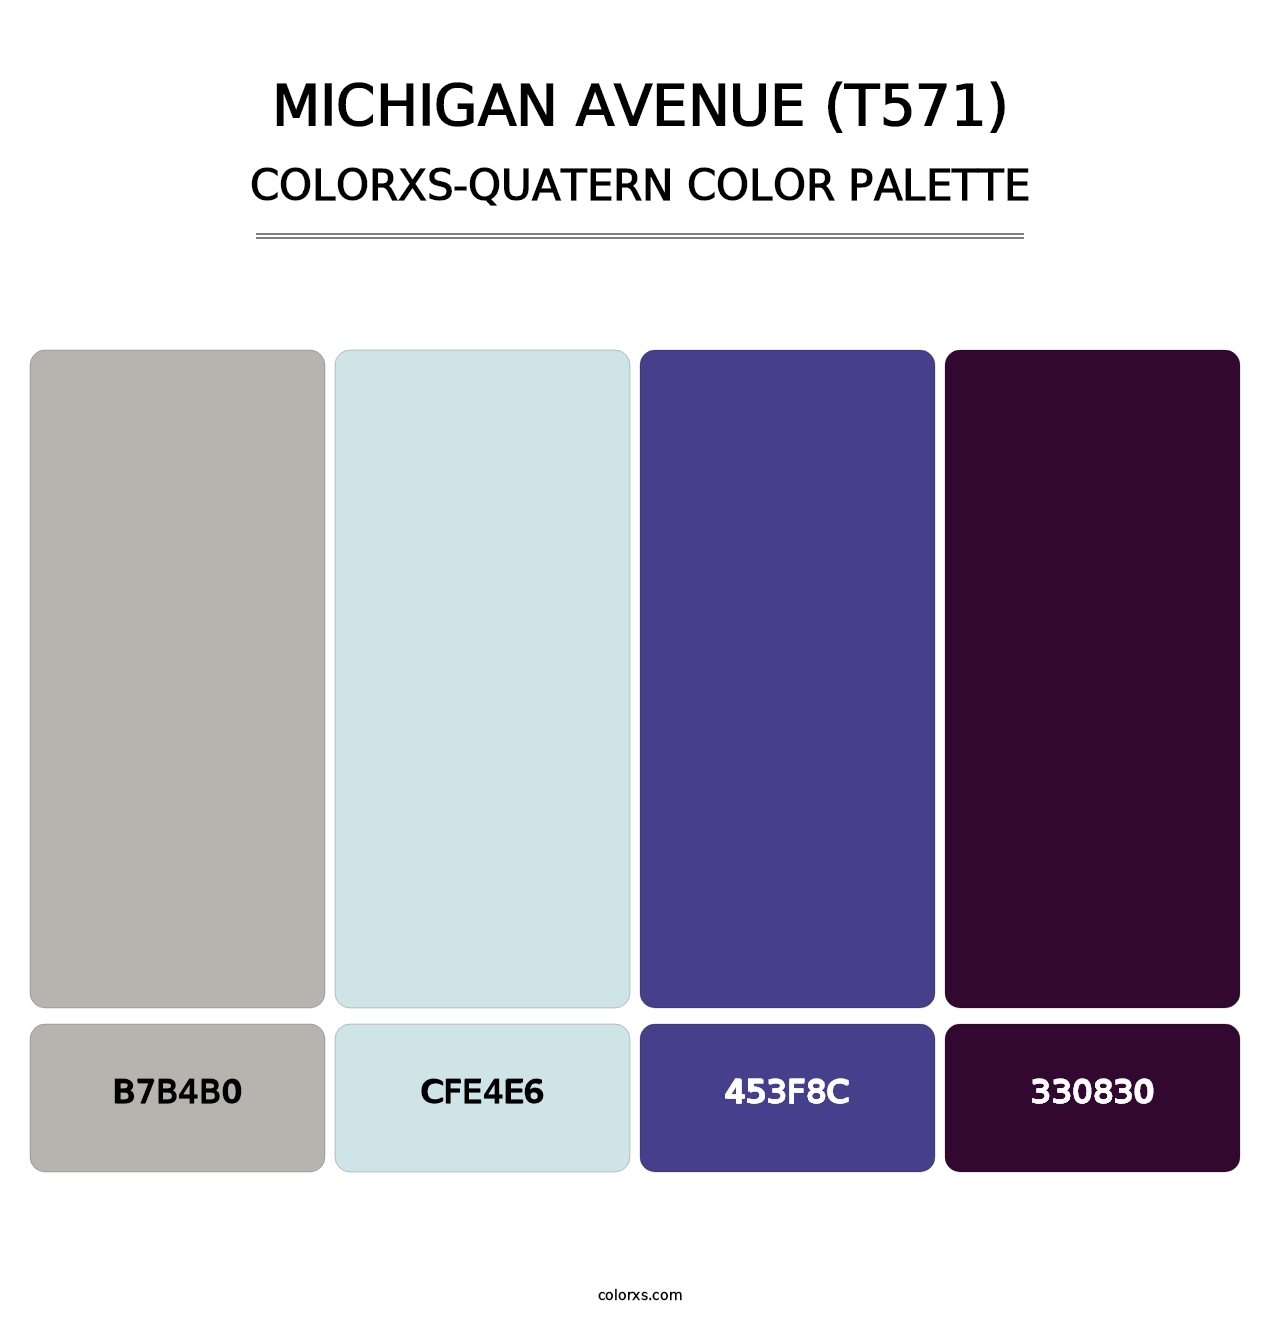 Michigan Avenue (T571) - Colorxs Quatern Palette